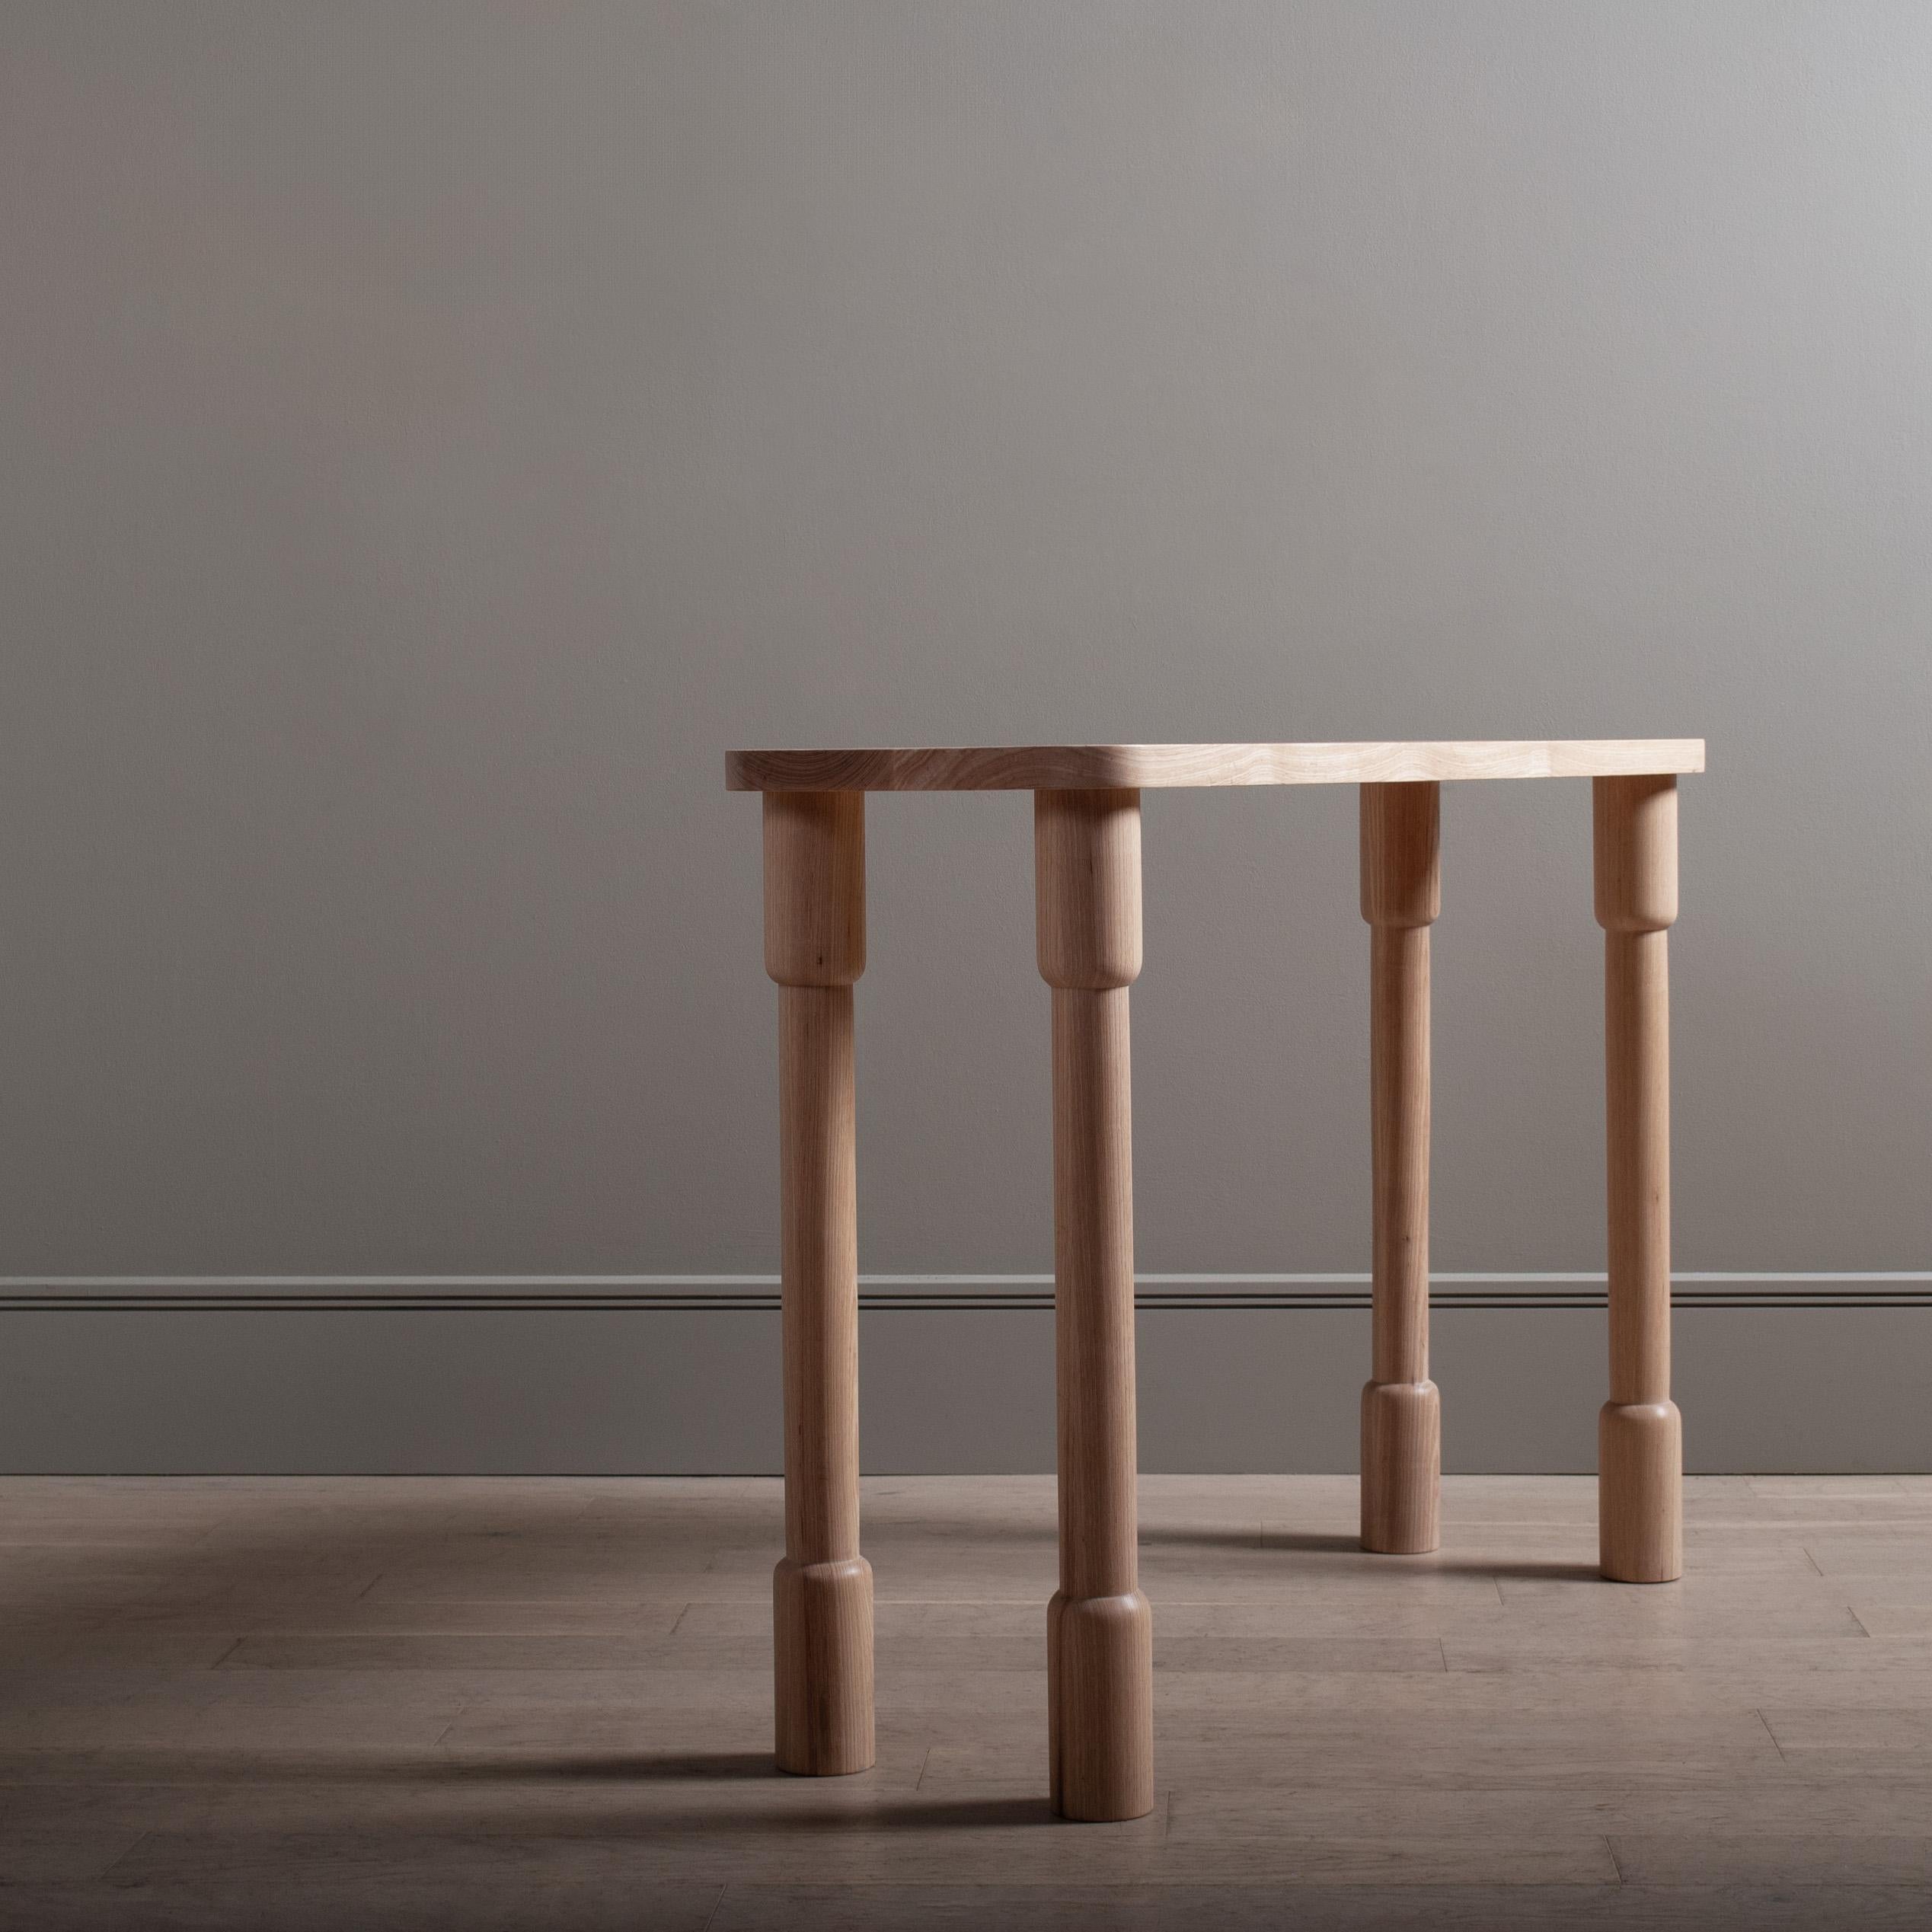 Table architecturale maunsell conçue et fabriquée à la main en Angleterre selon des techniques traditionnelles de fabrication de meubles. Entièrement fabriqué à la main à partir de frêne anglais de première qualité. Les pieds tournés à la main sont